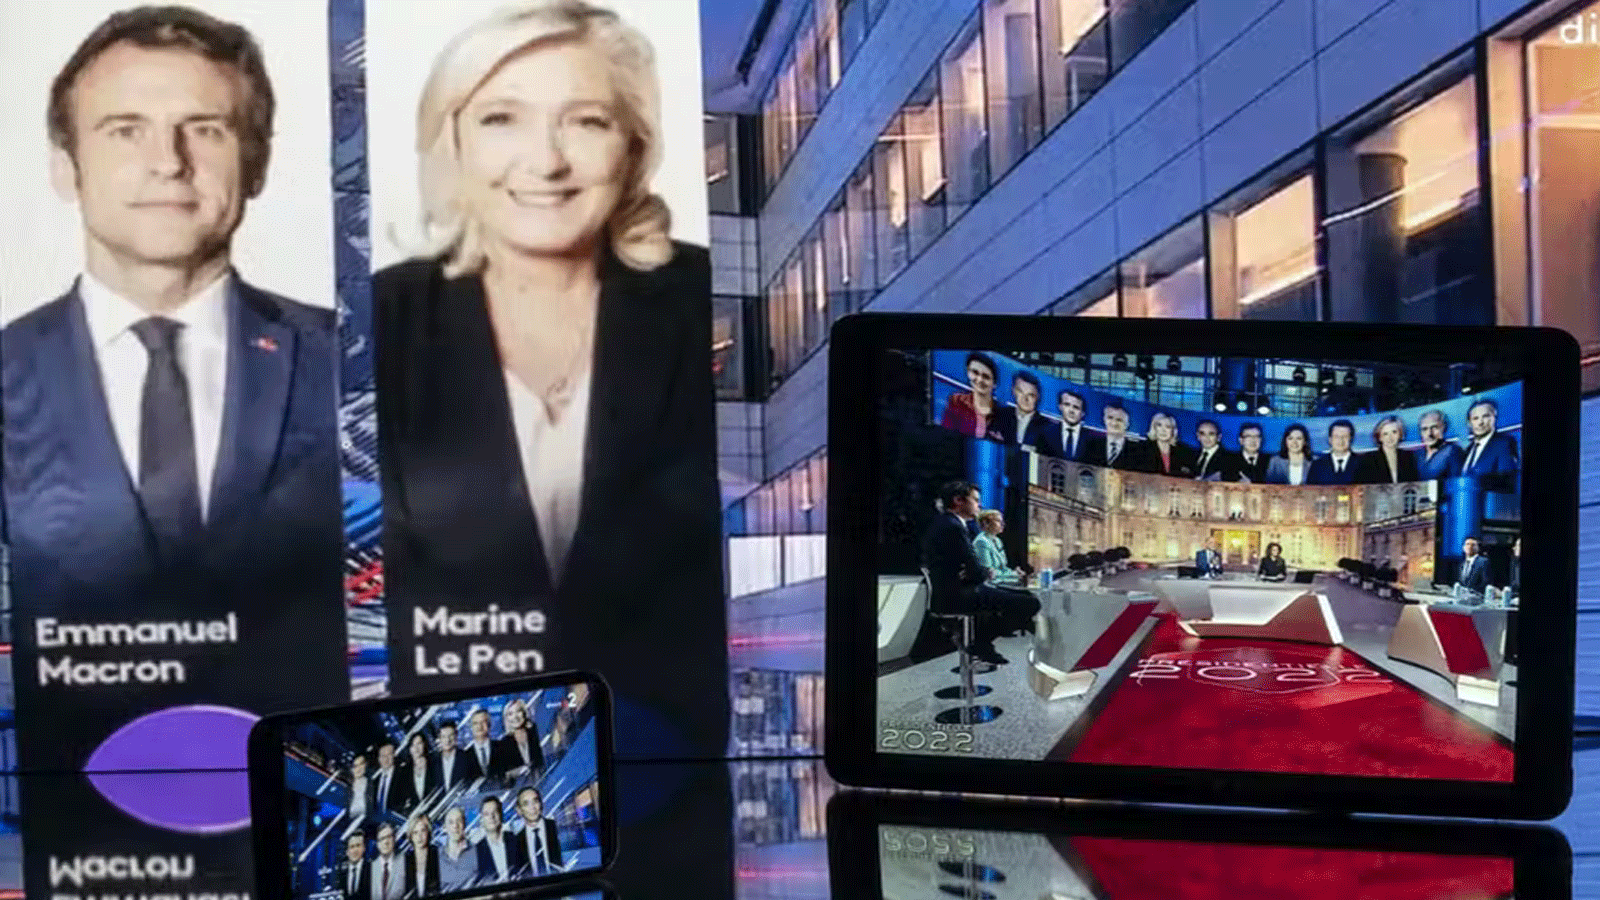 مرشحة اليمين المتطرف مارين لوبن والرئيس الفرنسي إيمانويل ماكرون يستعدان لمنظرة تلفزيونية مرتقبة غداً الأربعاء 20 نيسان\ أبريل 2022